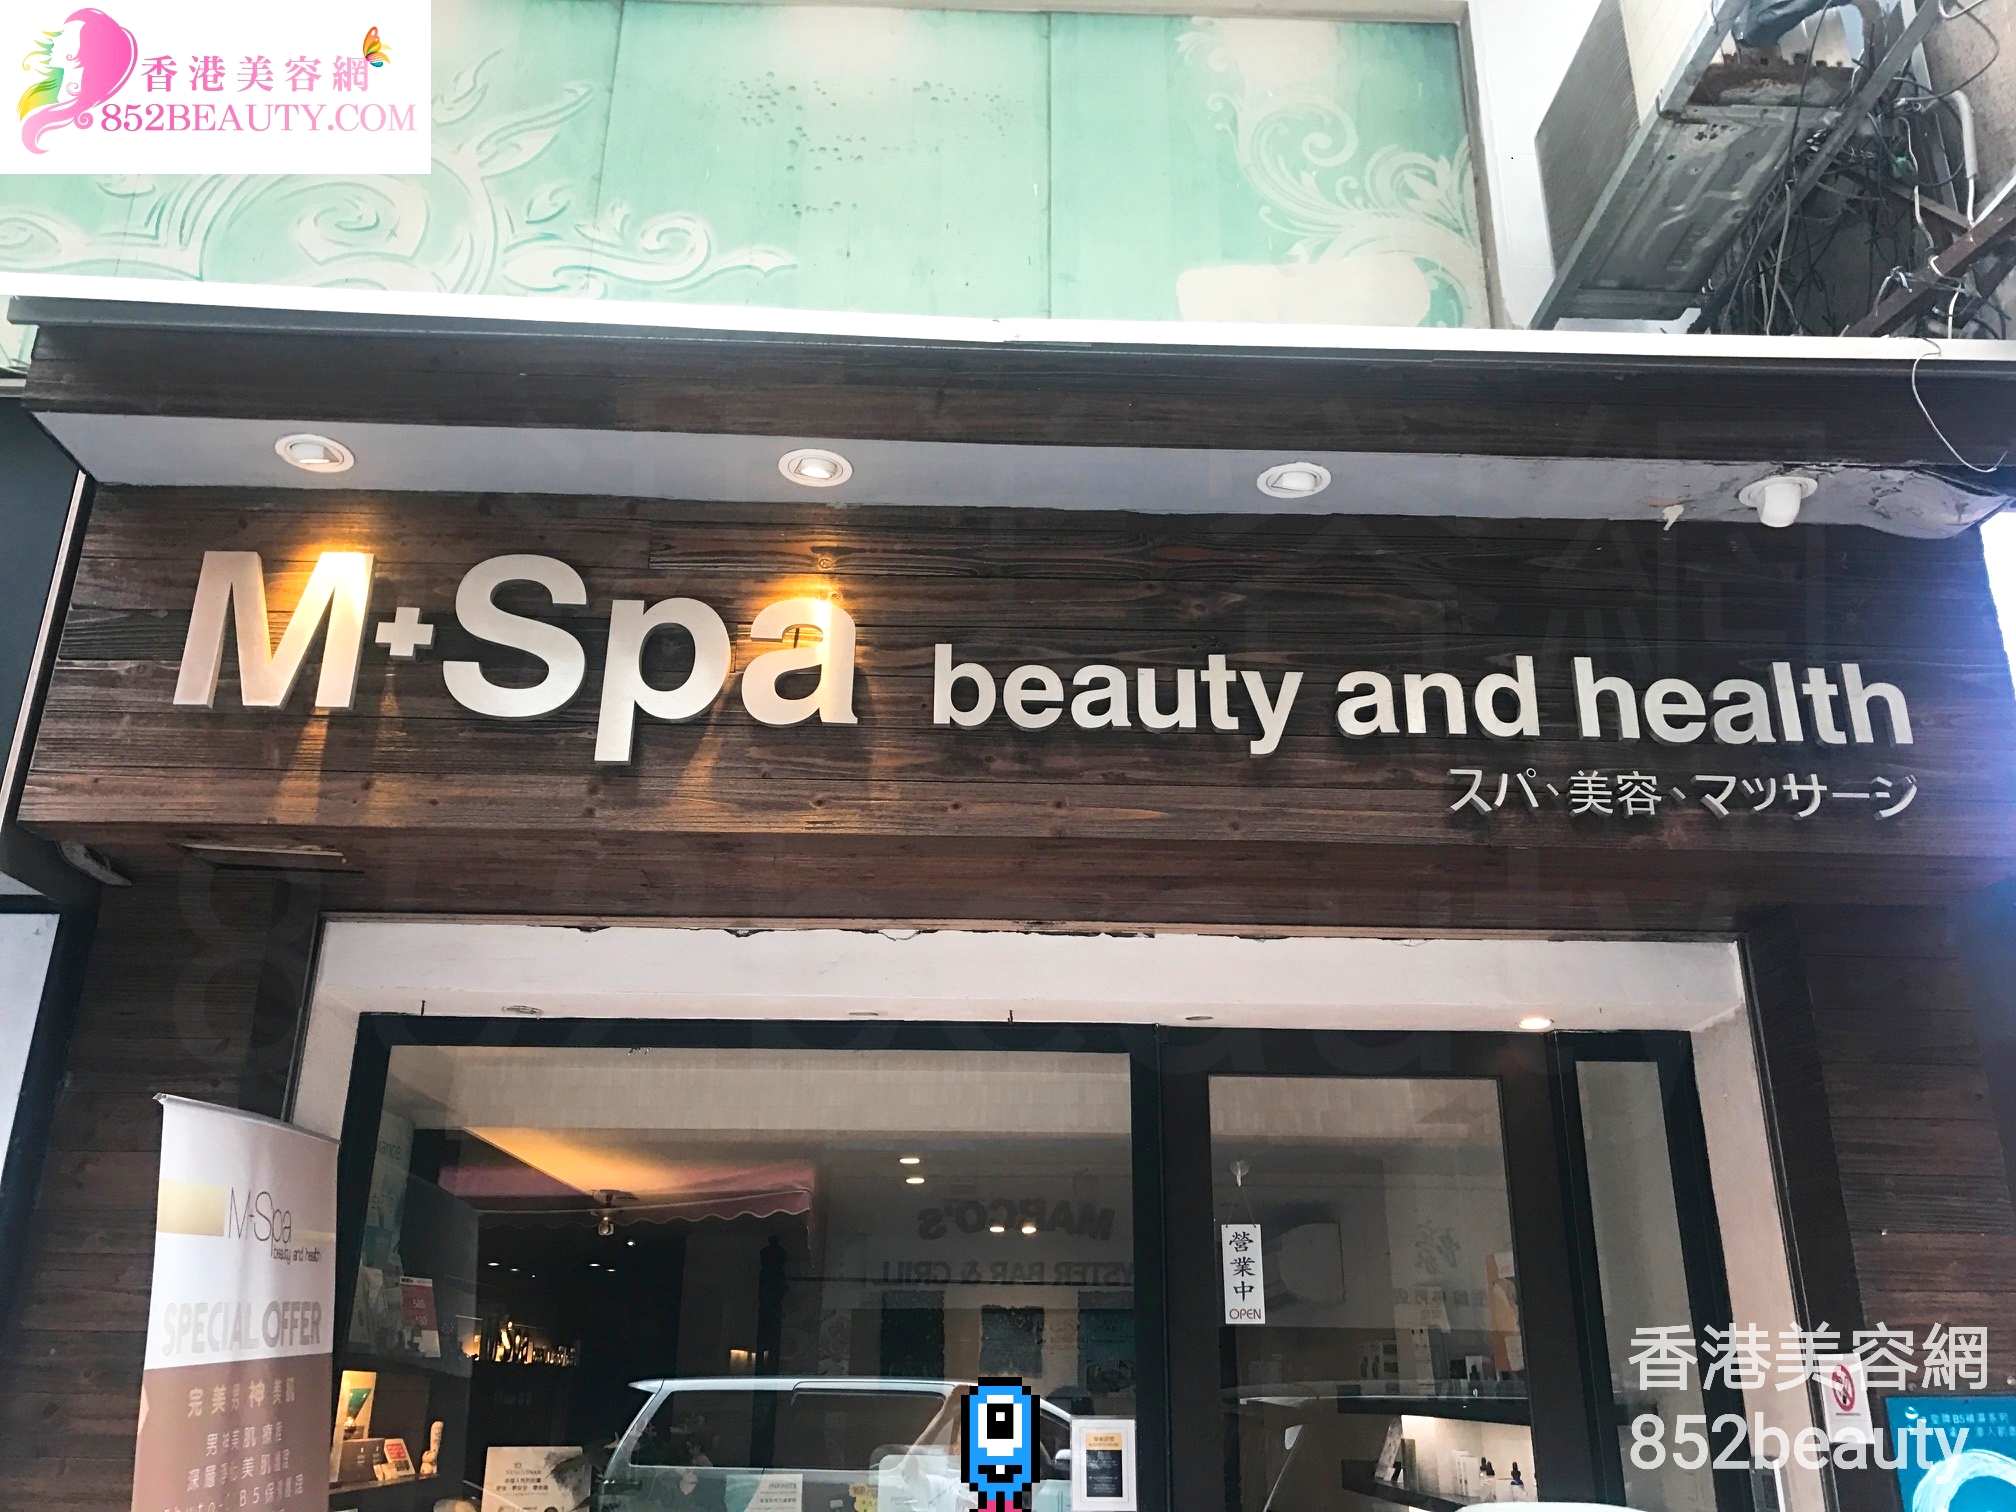 纖體瘦身: M+Spa beauty and health